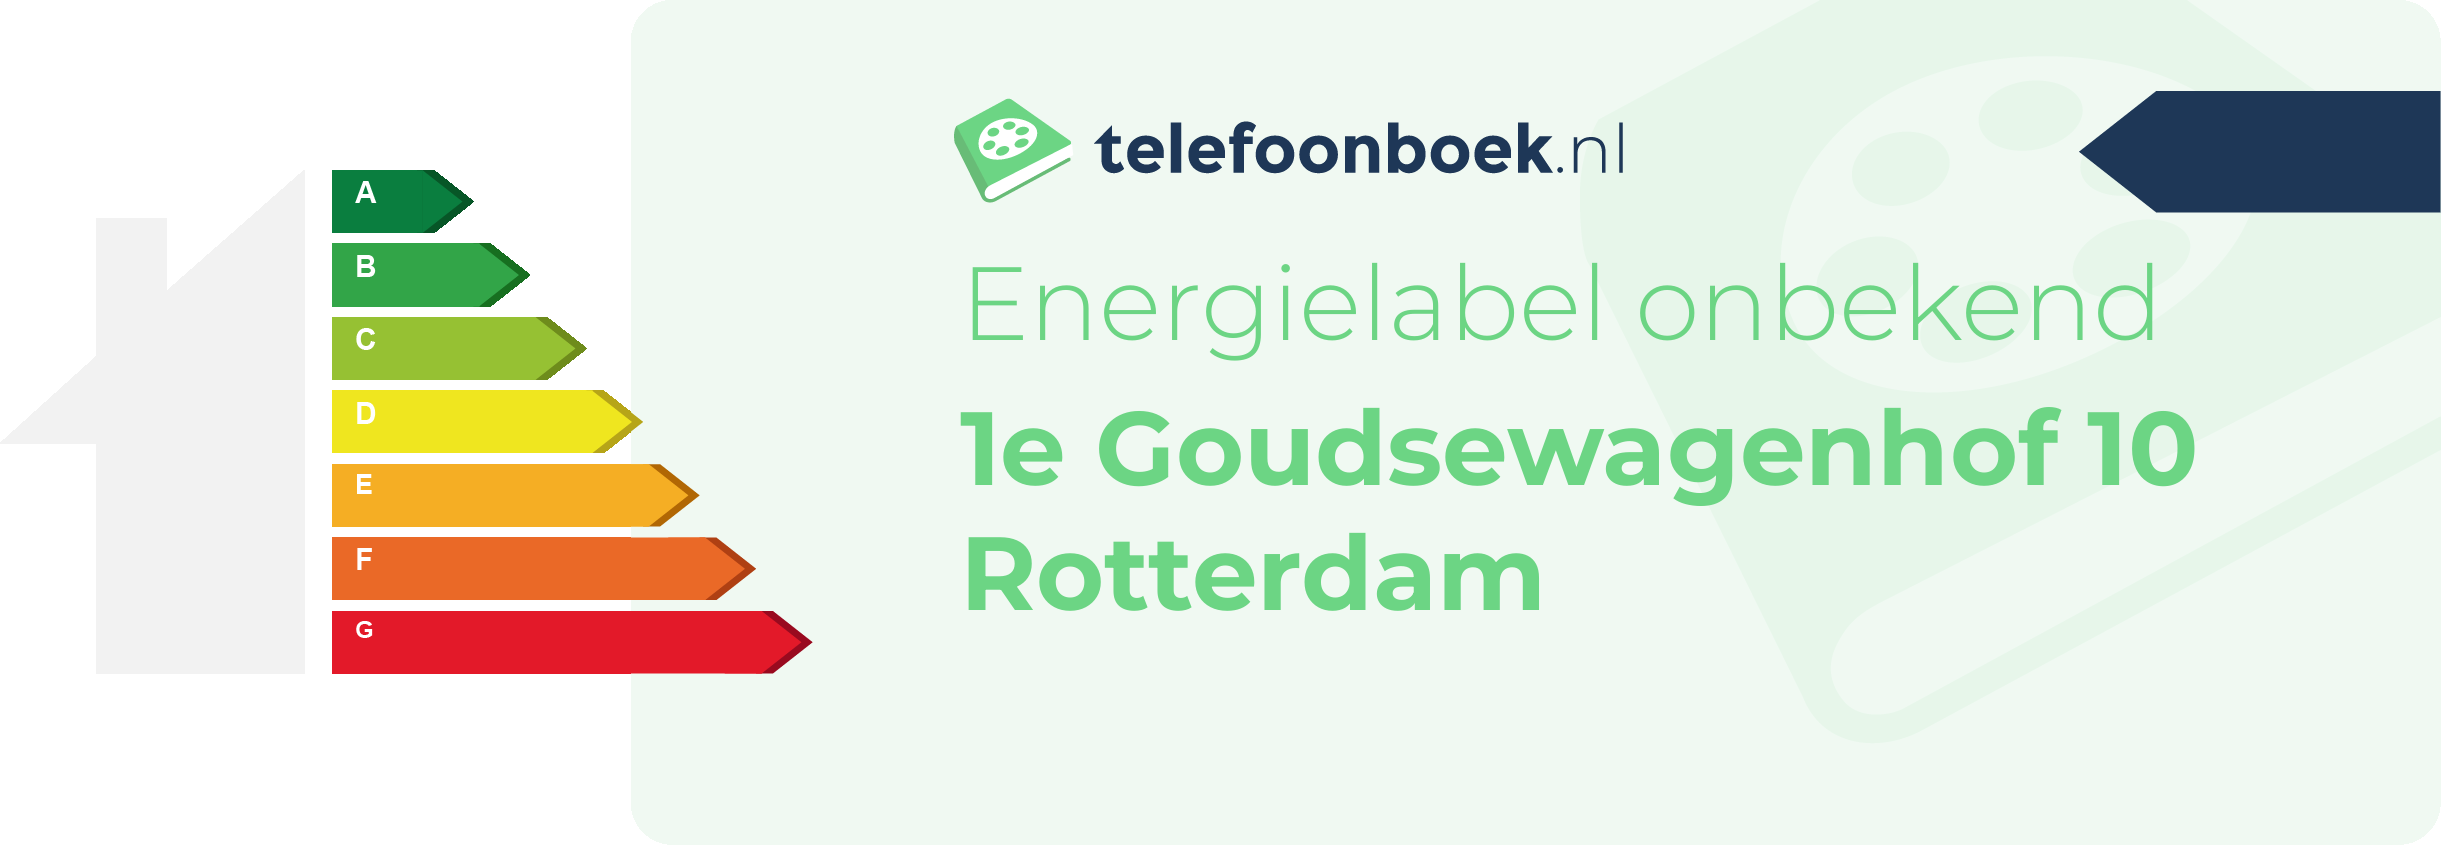 Energielabel 1e Goudsewagenhof 10 Rotterdam